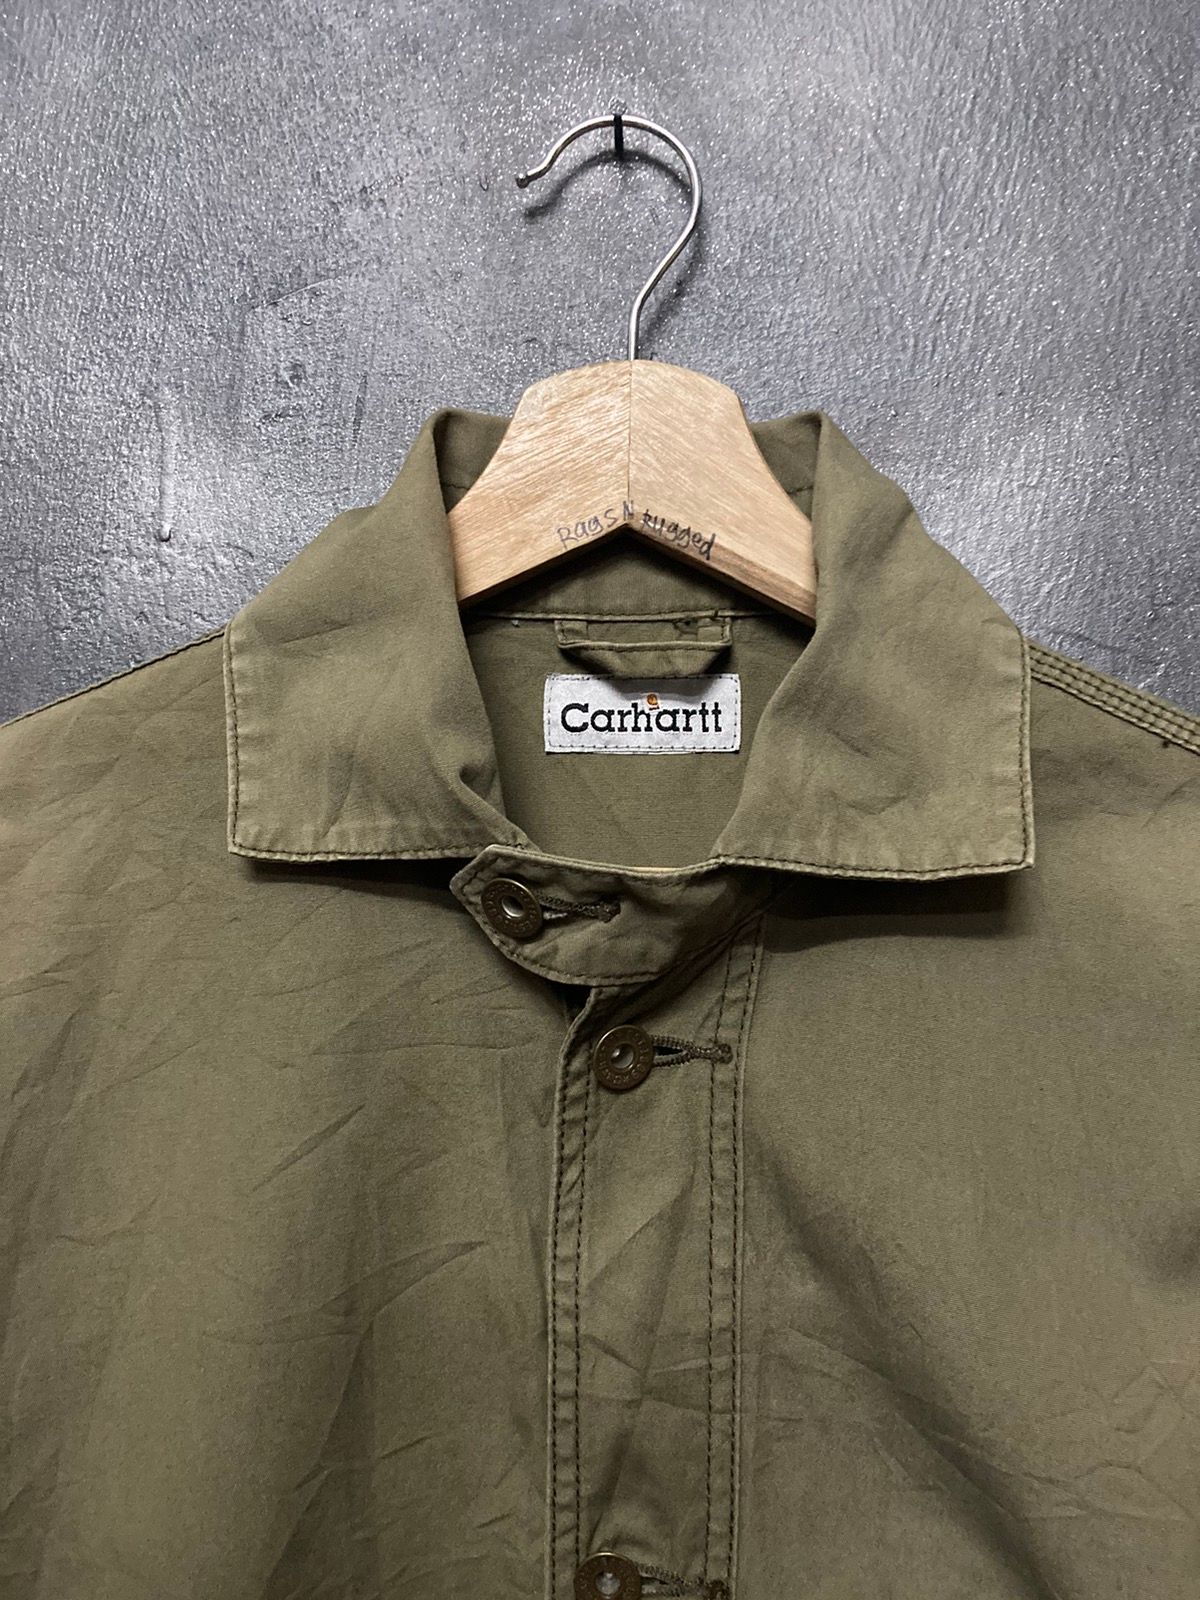 Carhartt Button Up Long Sleeve Shirt - 6